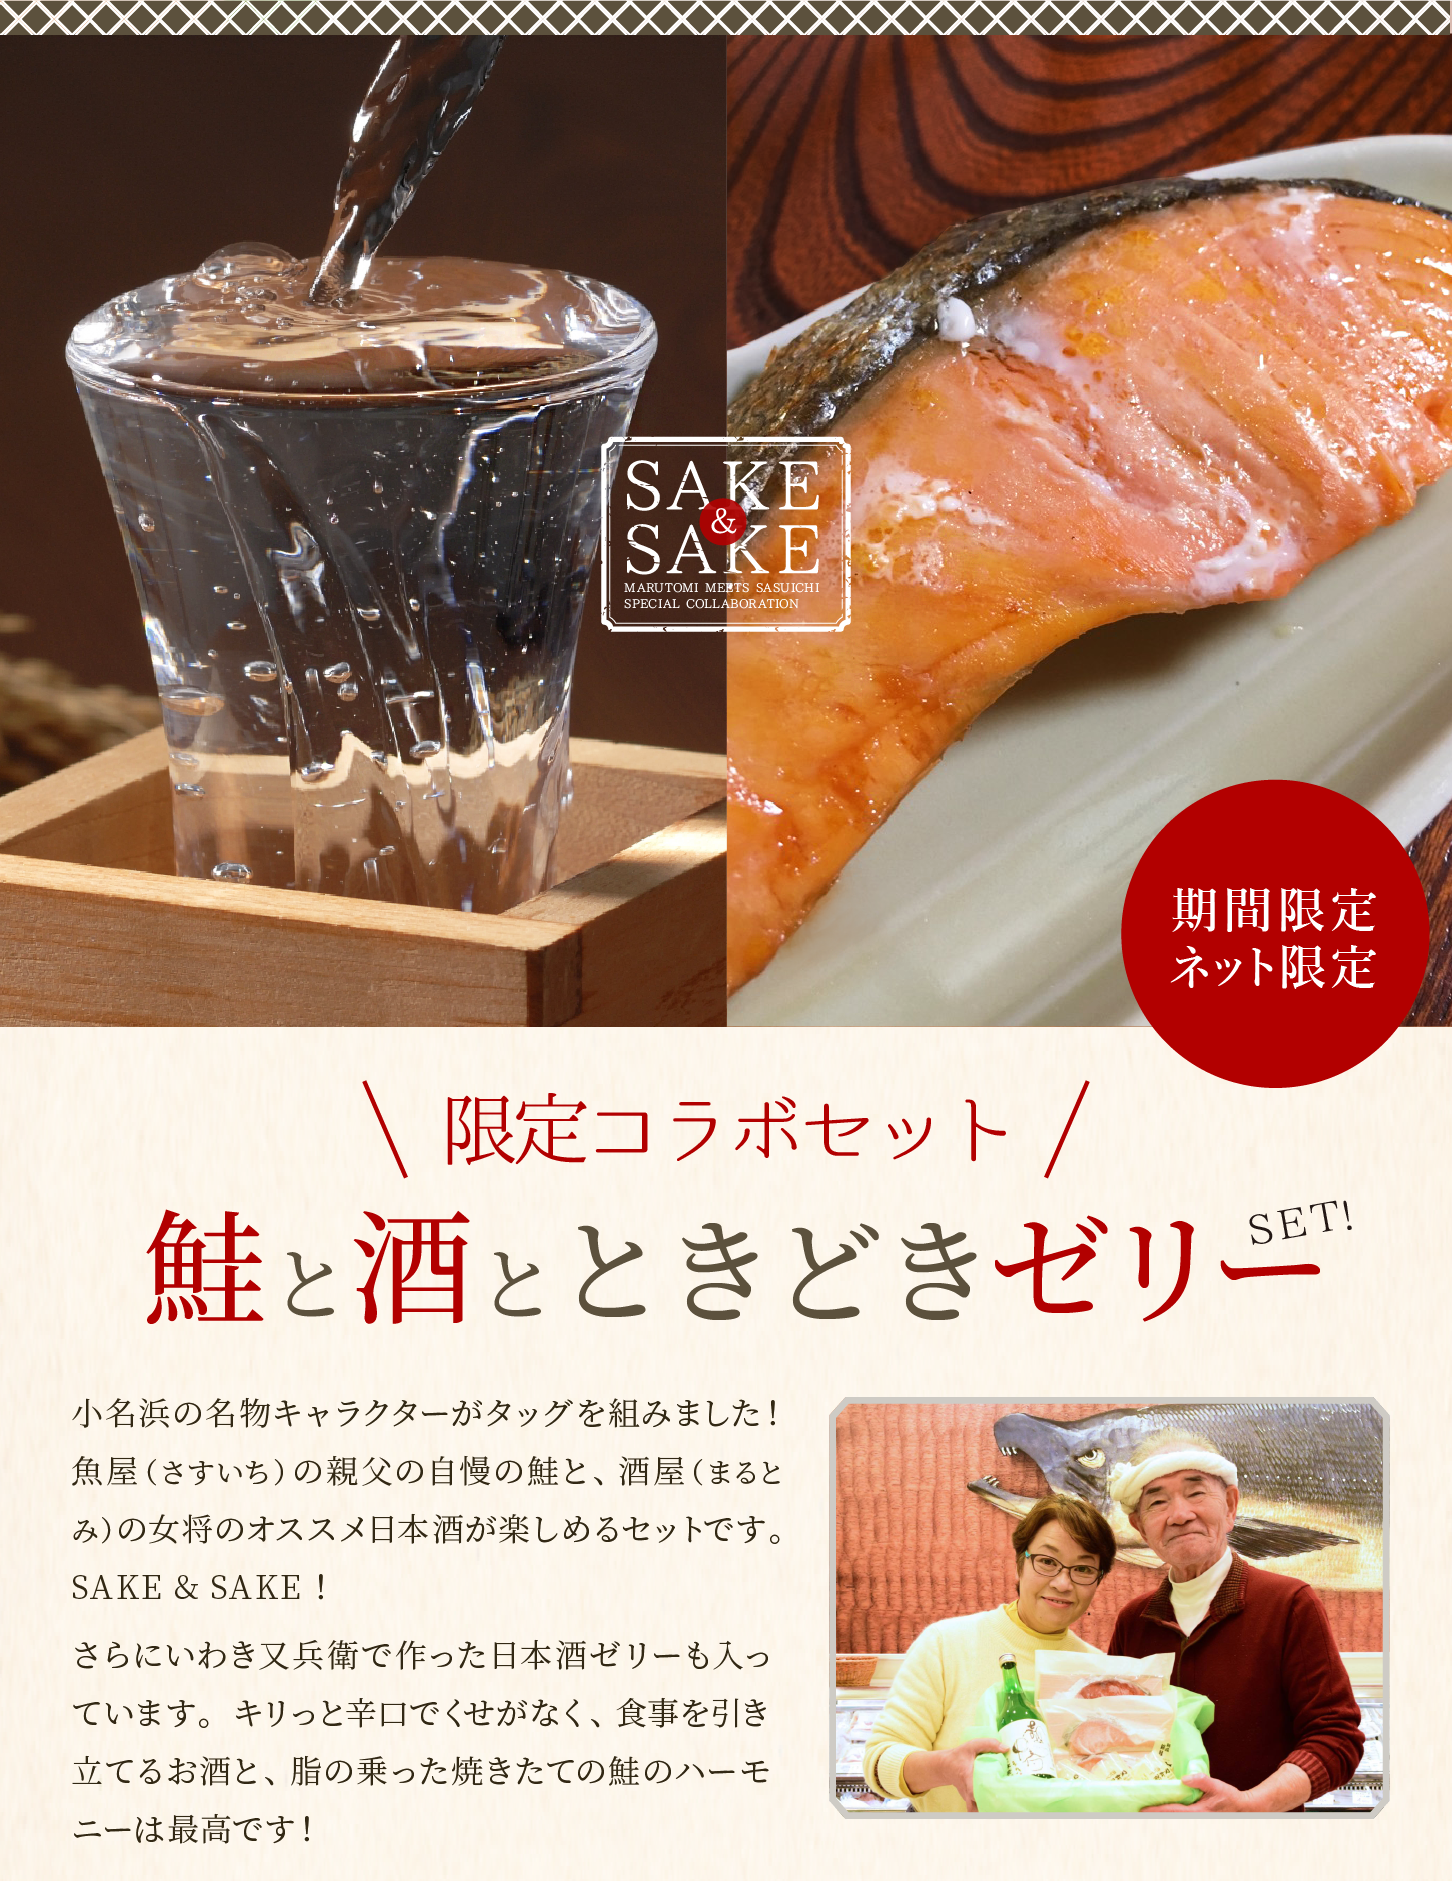 鮭と酒とときどき日本酒ゼリーセット。小名浜の名物キャラクターがタッグを組みました！魚屋（さすいち）の親父の自慢の鮭と、酒屋（まるとみ）の女将のオススメ日本酒が楽しめる期間限定セットです。